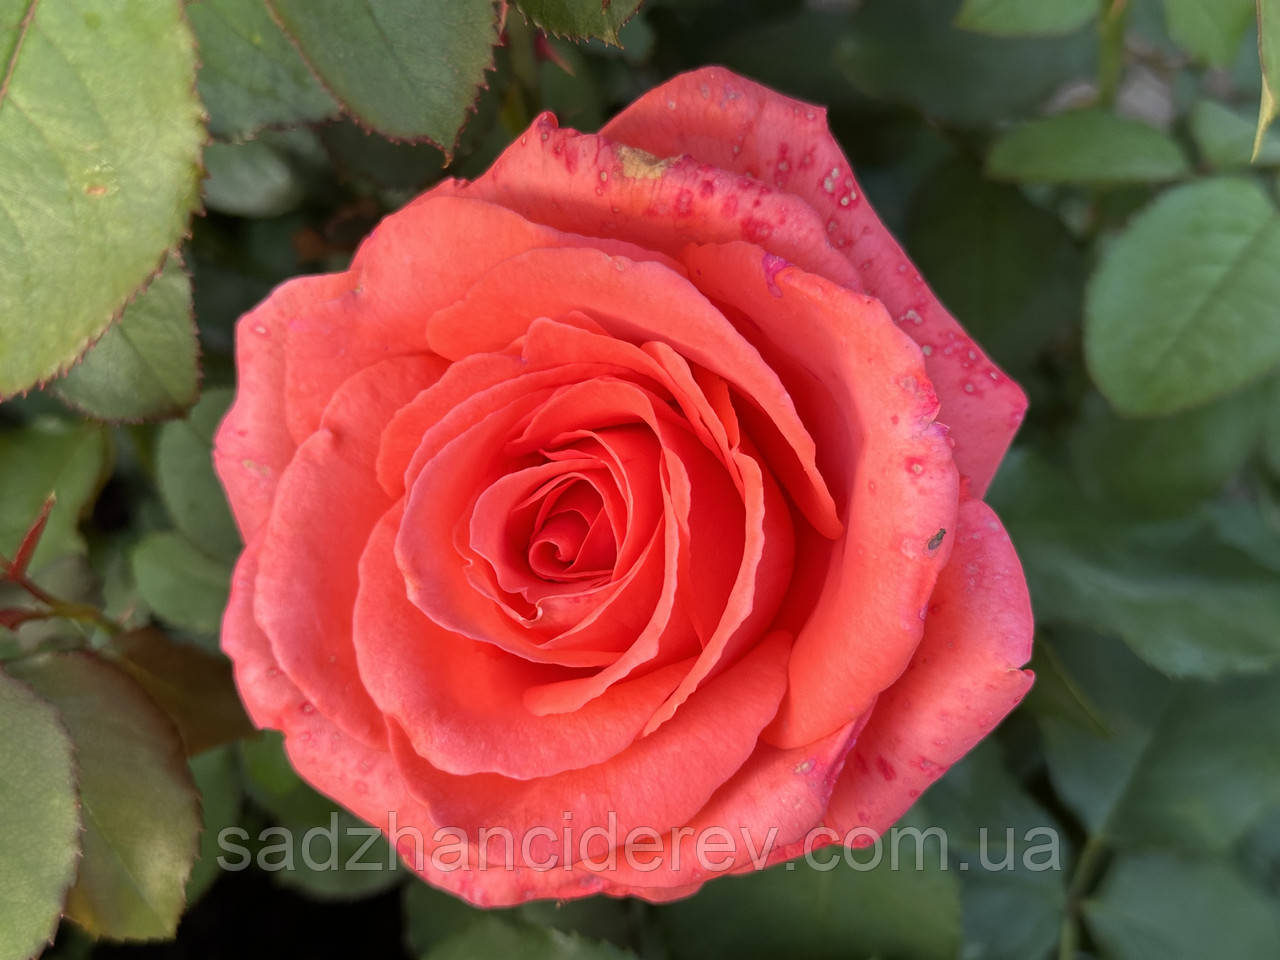 Саджанці троянд Ді Ді Бріджуотер (Dee Dee Bridgewater), фото 1